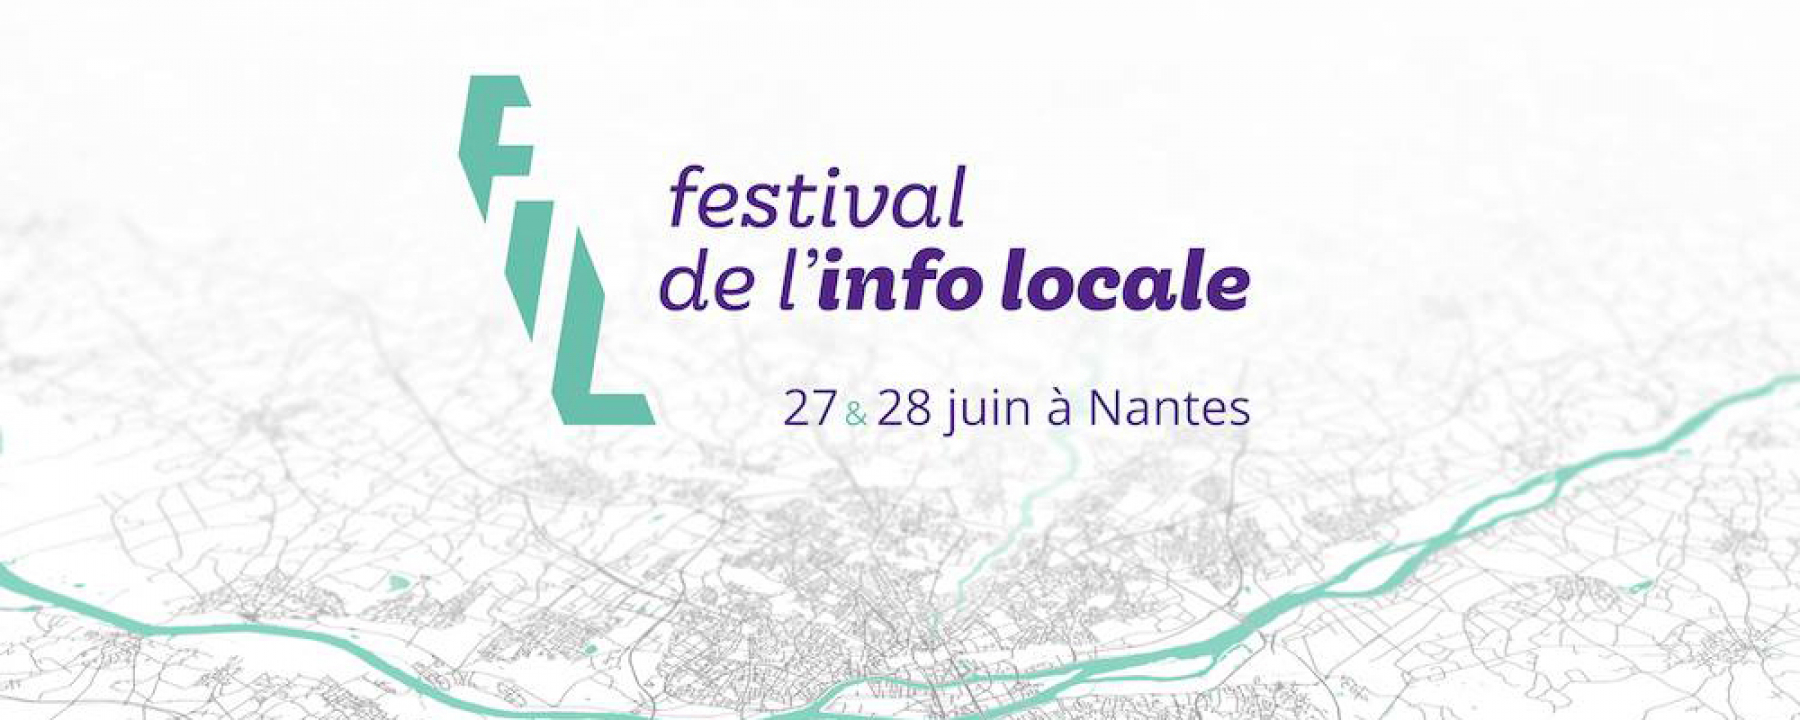 festival de l'info locale